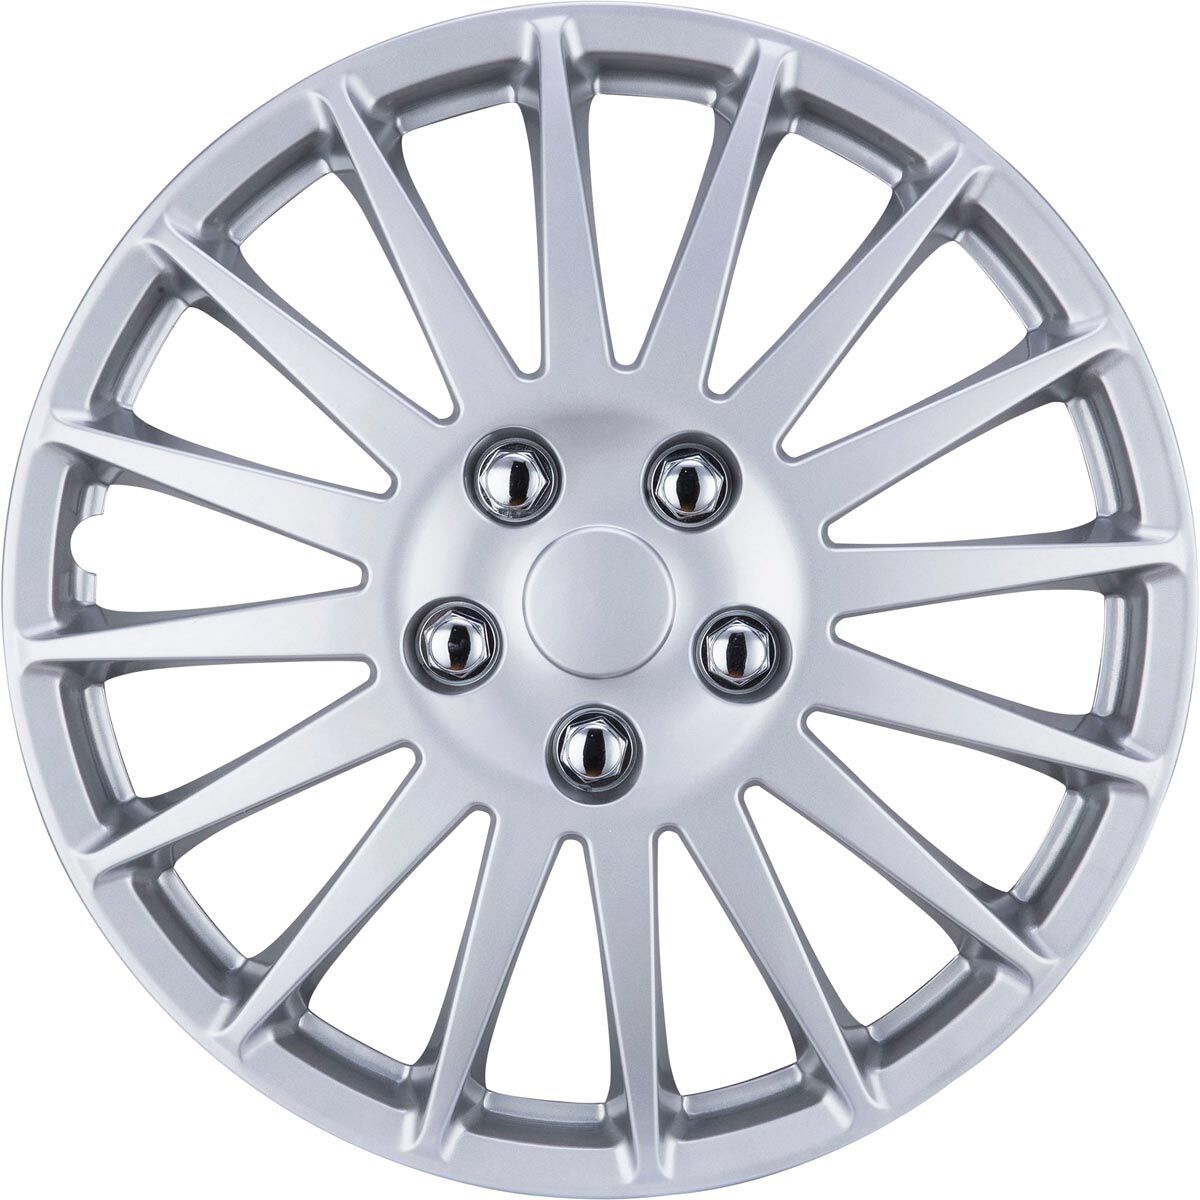 SCA Wheel Covers Turbine Silver 16